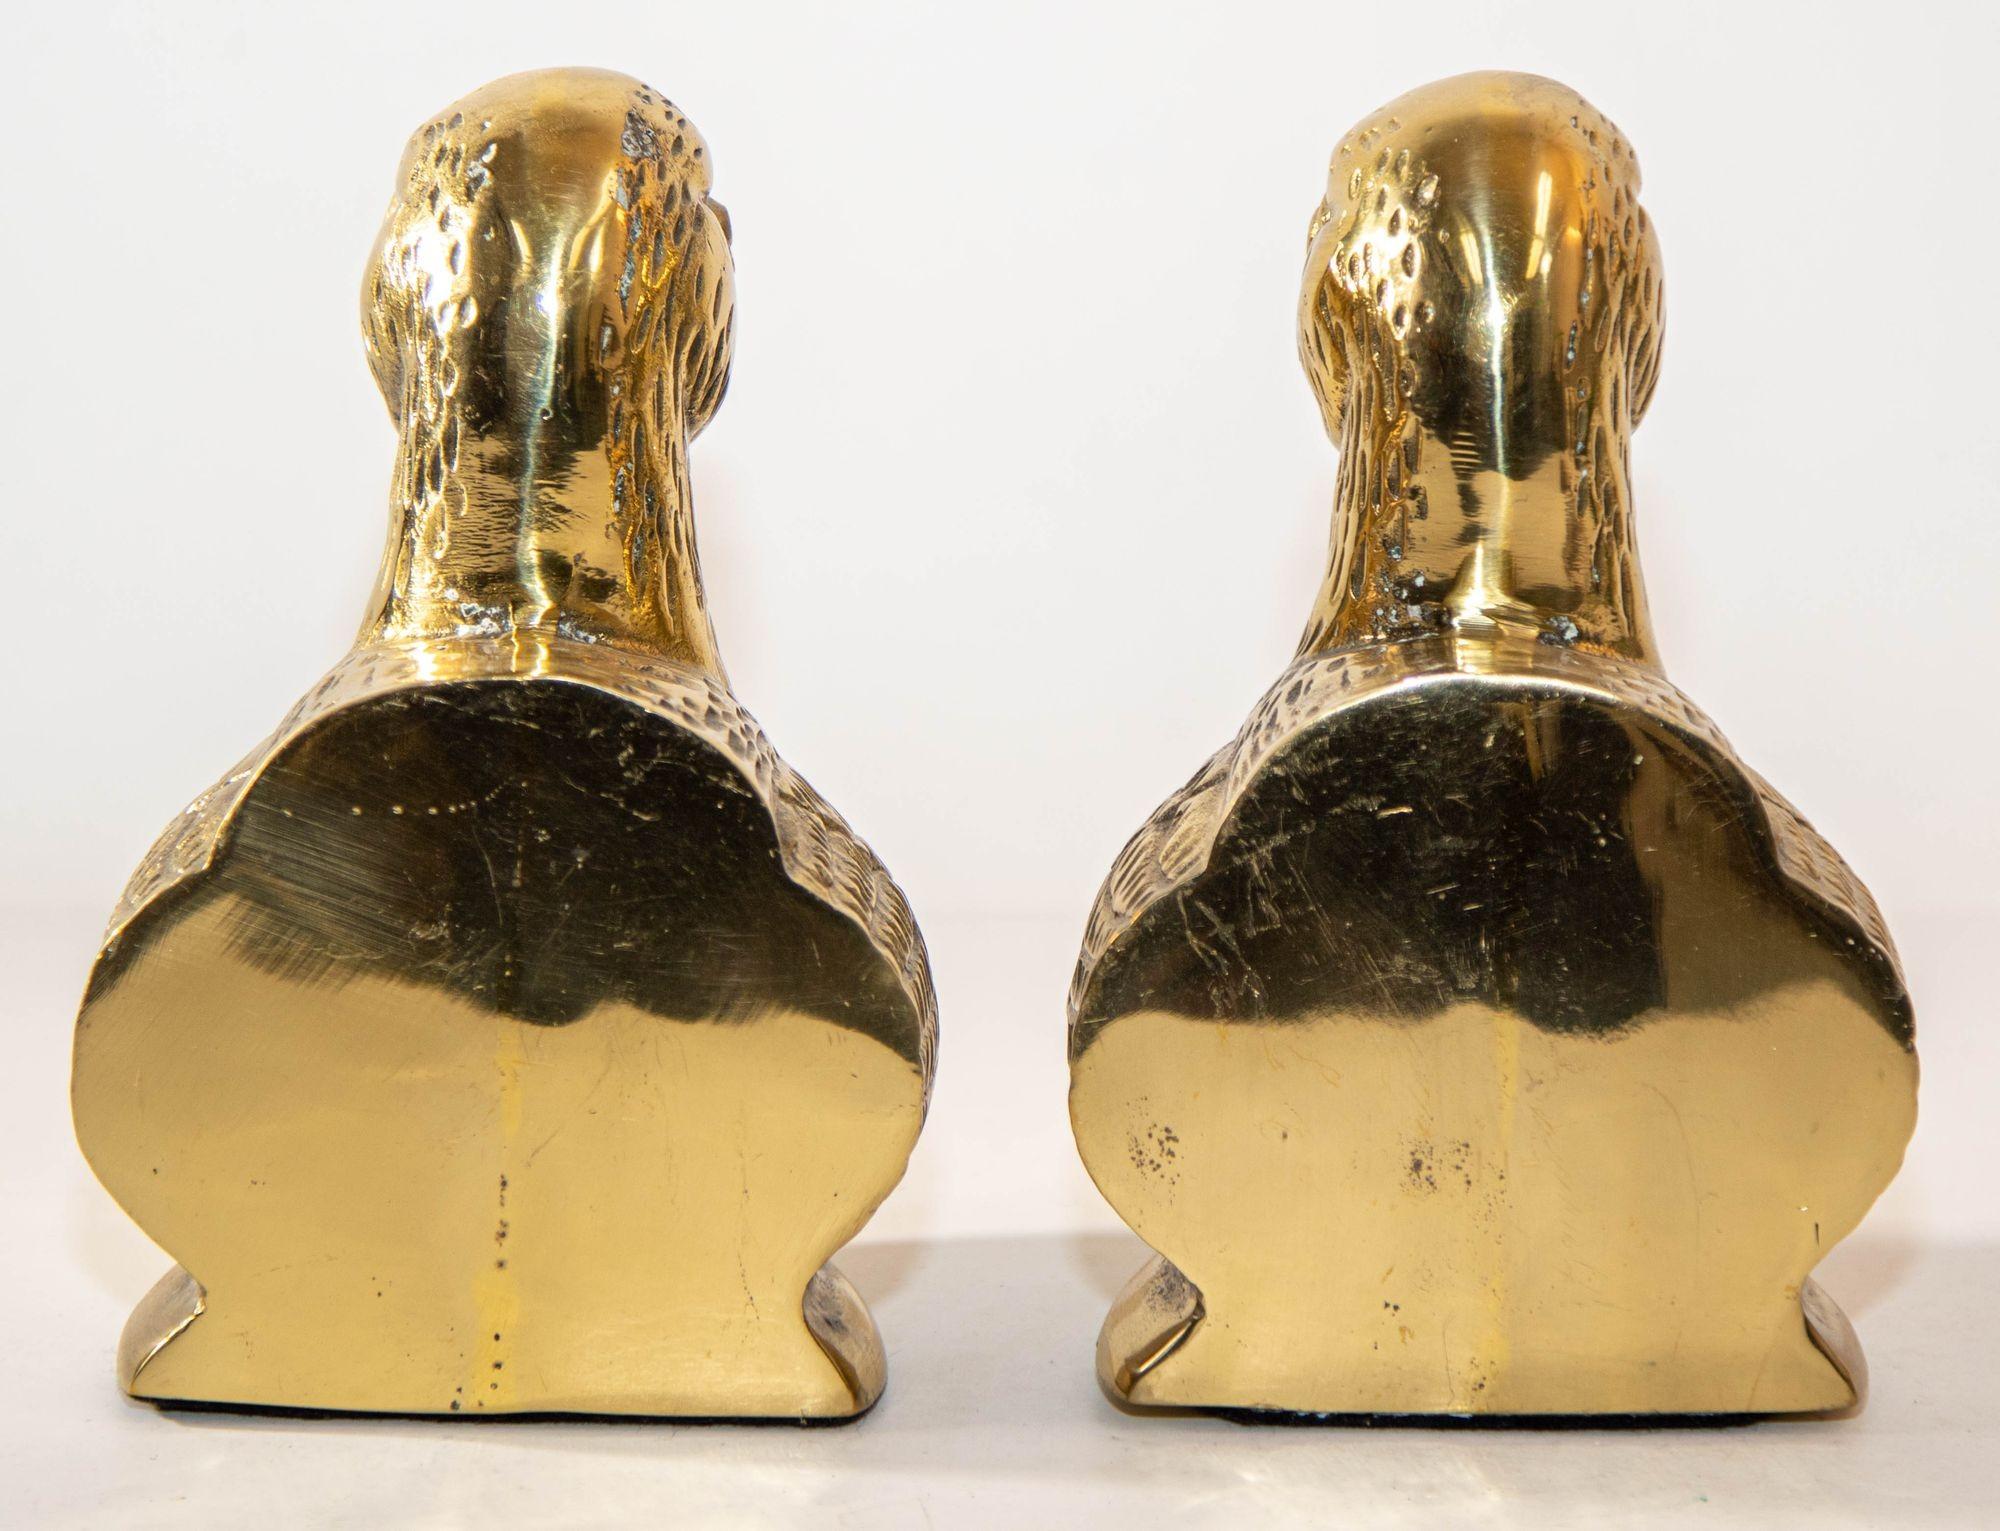 Cast Polished Brass Mallard Duck Head Bookends Sarreid Ltd Style 1940s a Pair